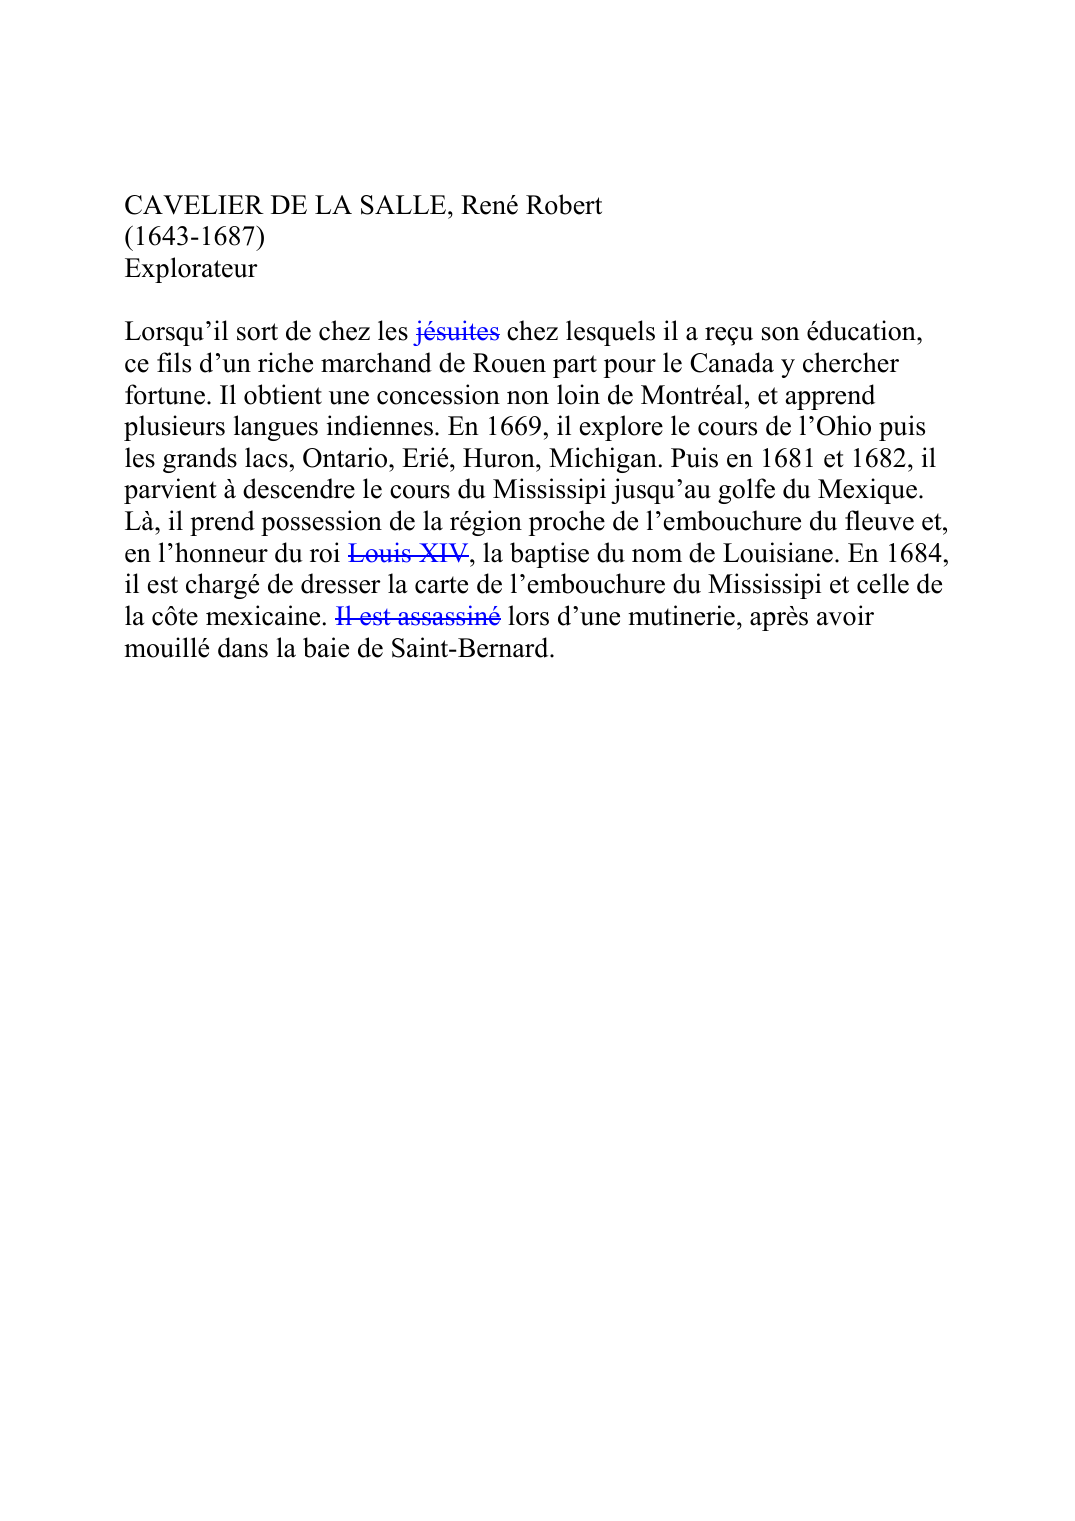 Prévisualisation du document CAVELIER DE LA SALLE, René Robert (1643-1687) Explorateur  Lorsqu'il sort de chez les jésuitesK109 chez lesquels il a reçu son éducation, ce fils d'un riche marchand de Rouen part pour le Canada y chercher fortune.